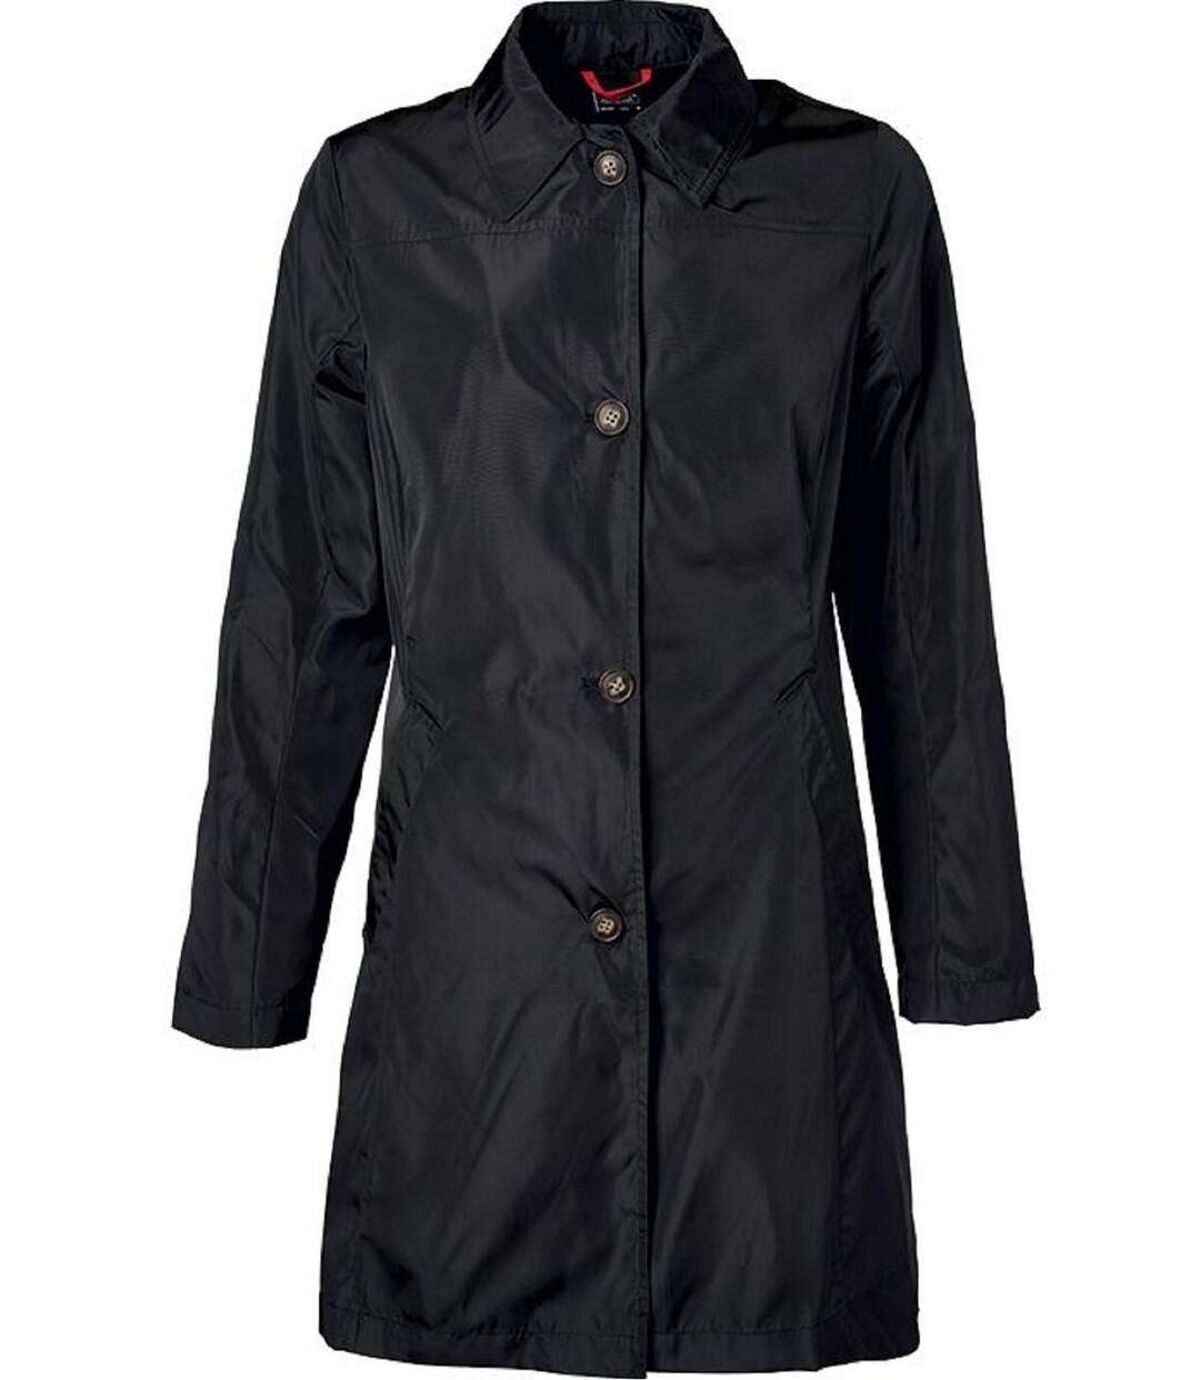 Manteau de ville court - Femme - JN1141 - noir